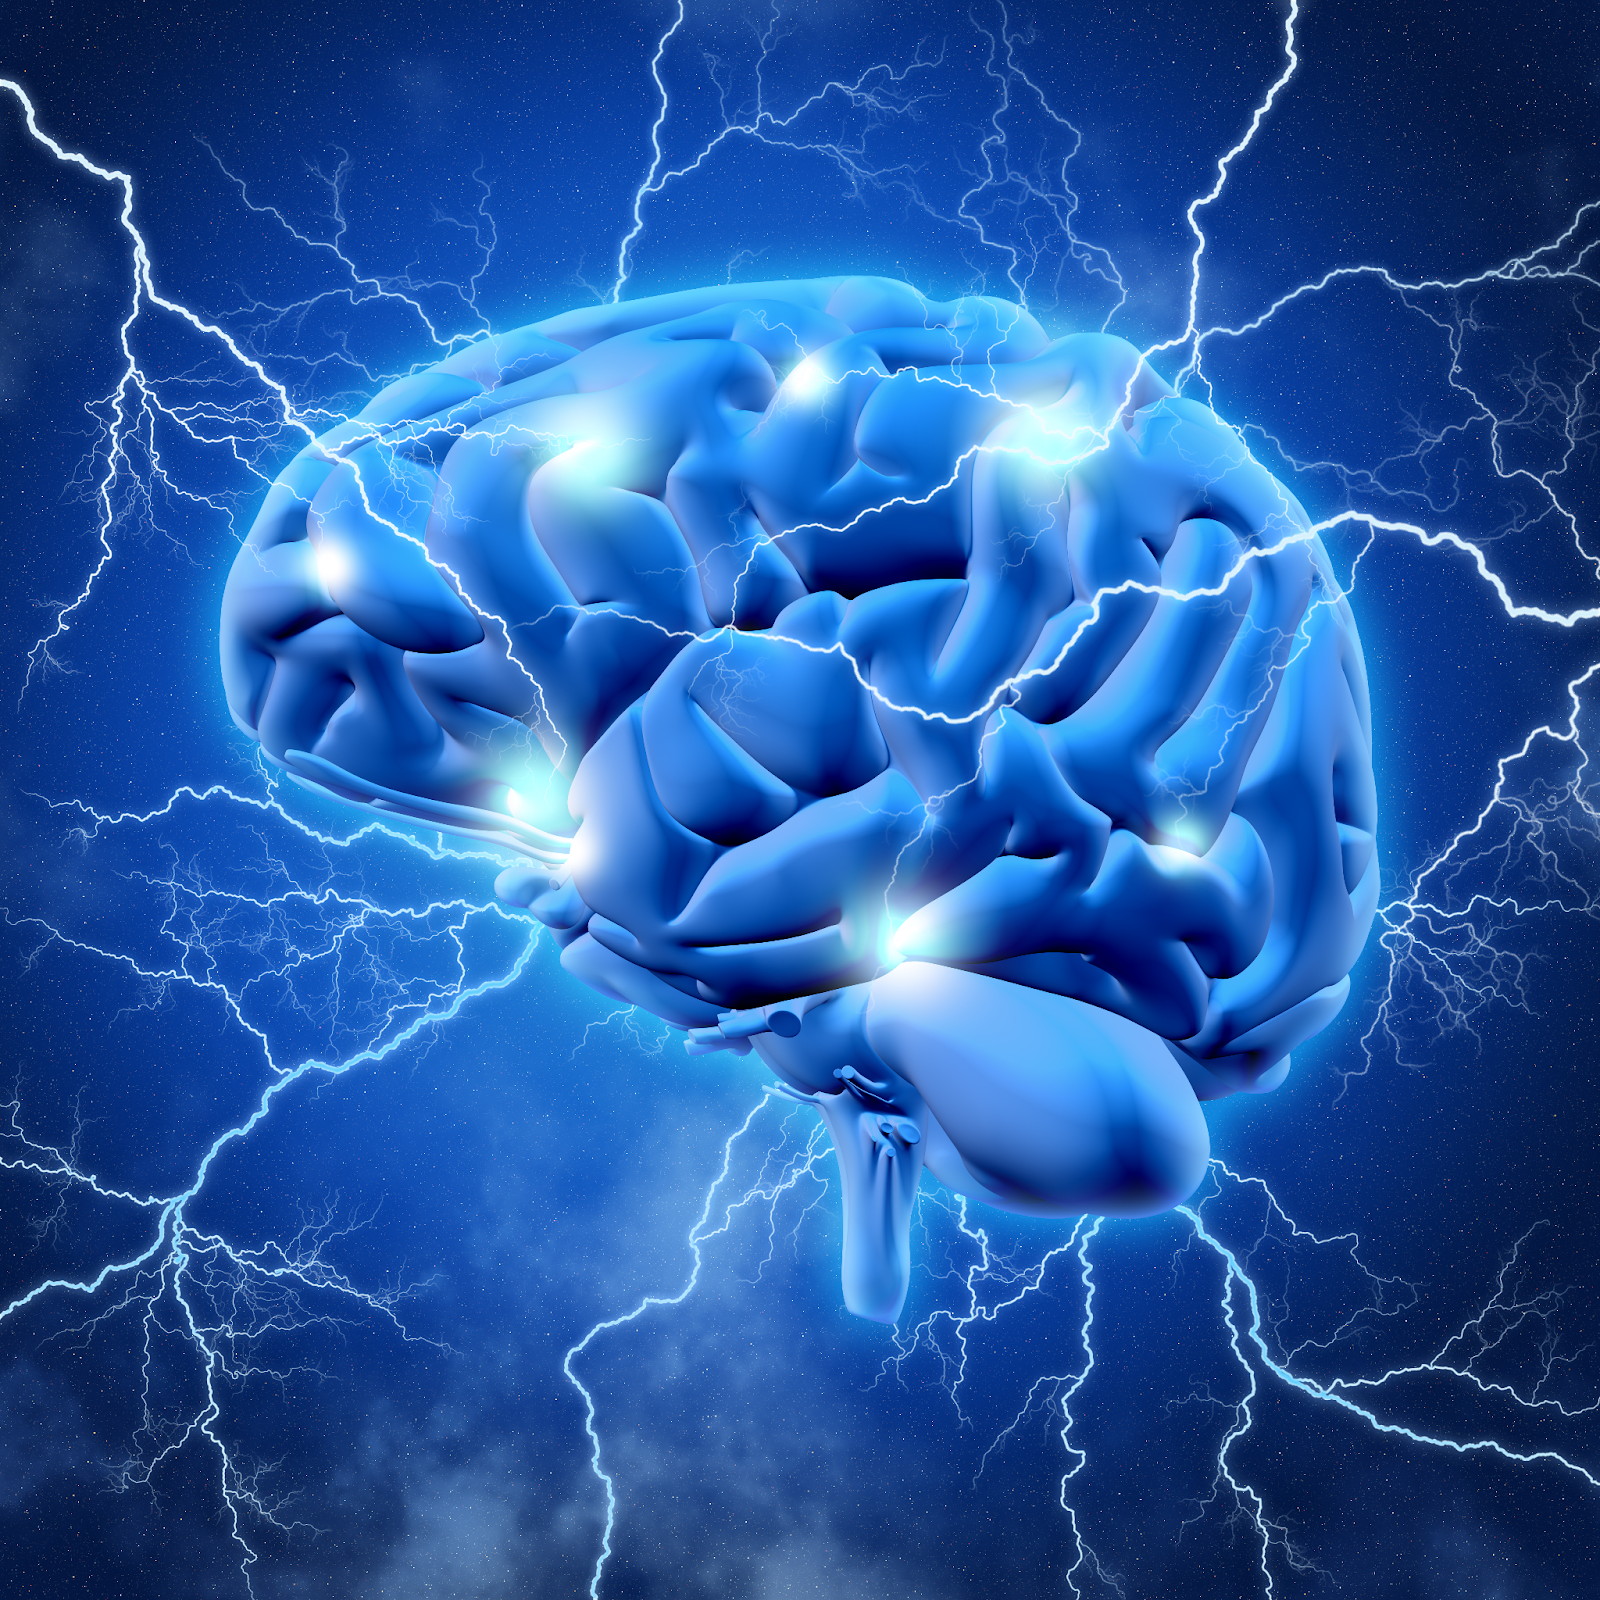 cérebro 3D ilustrando a comunicação do cérebro com o corpo através dos nervos 